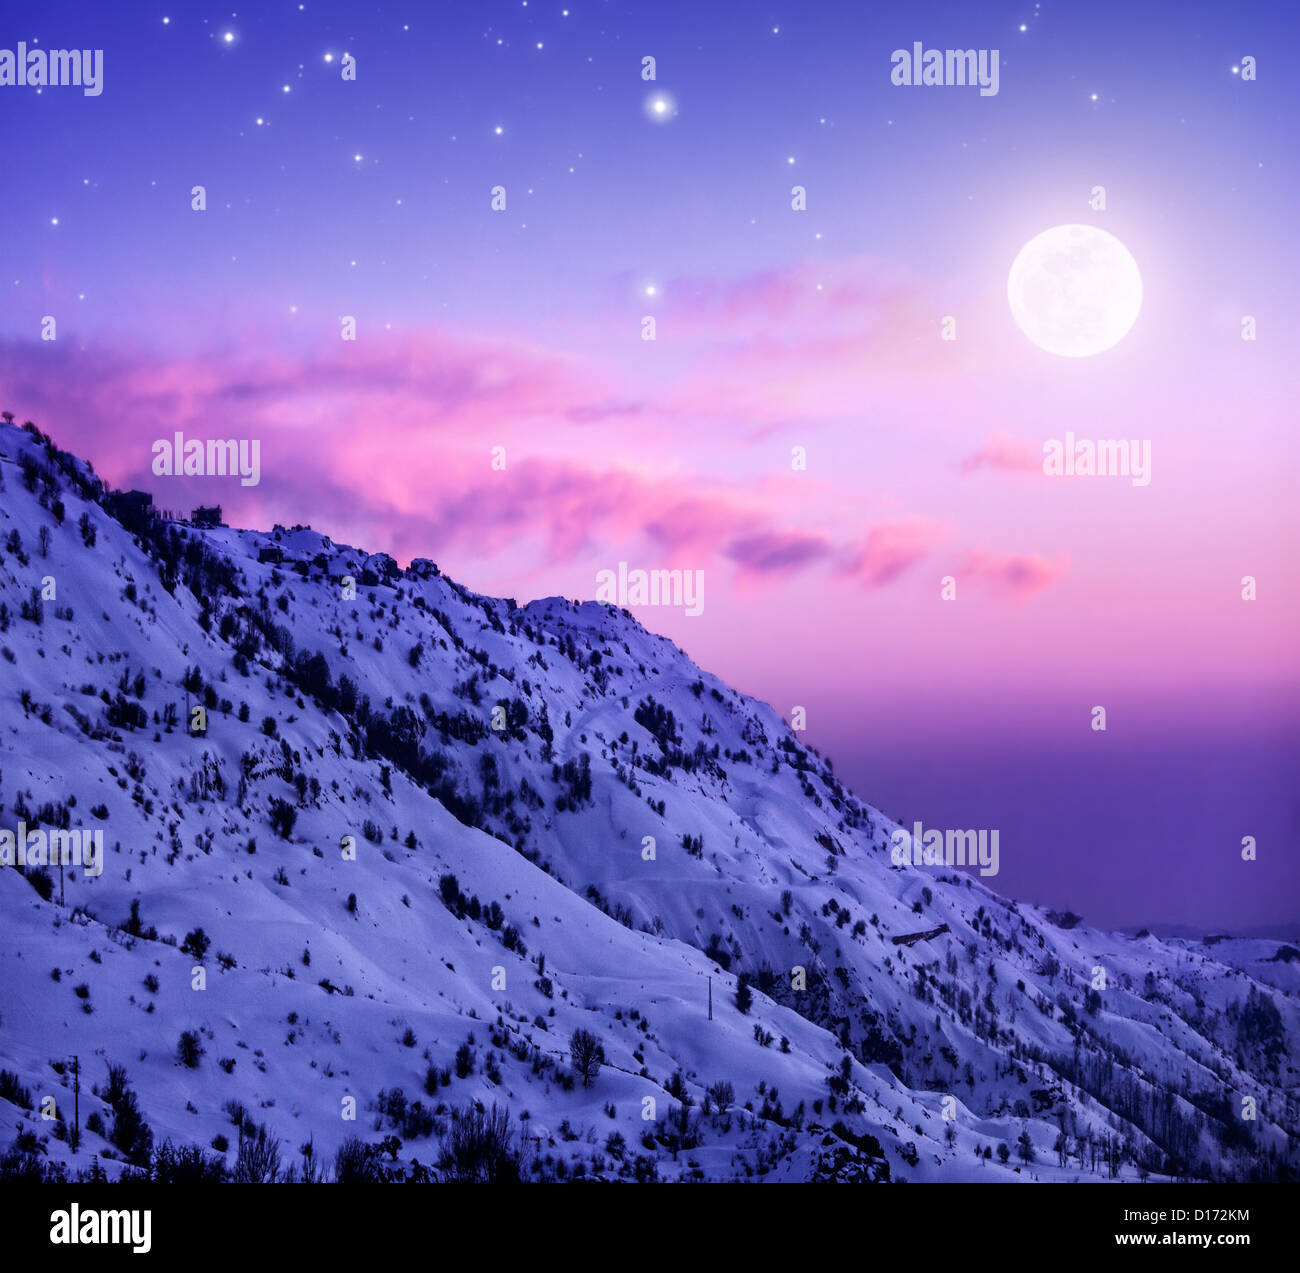 Foto de hermosas montañas nevadas de fondo, Faraya atardecer púrpura en el Líbano de montaña cubiertos de nieve blanca, el invierno Foto de stock